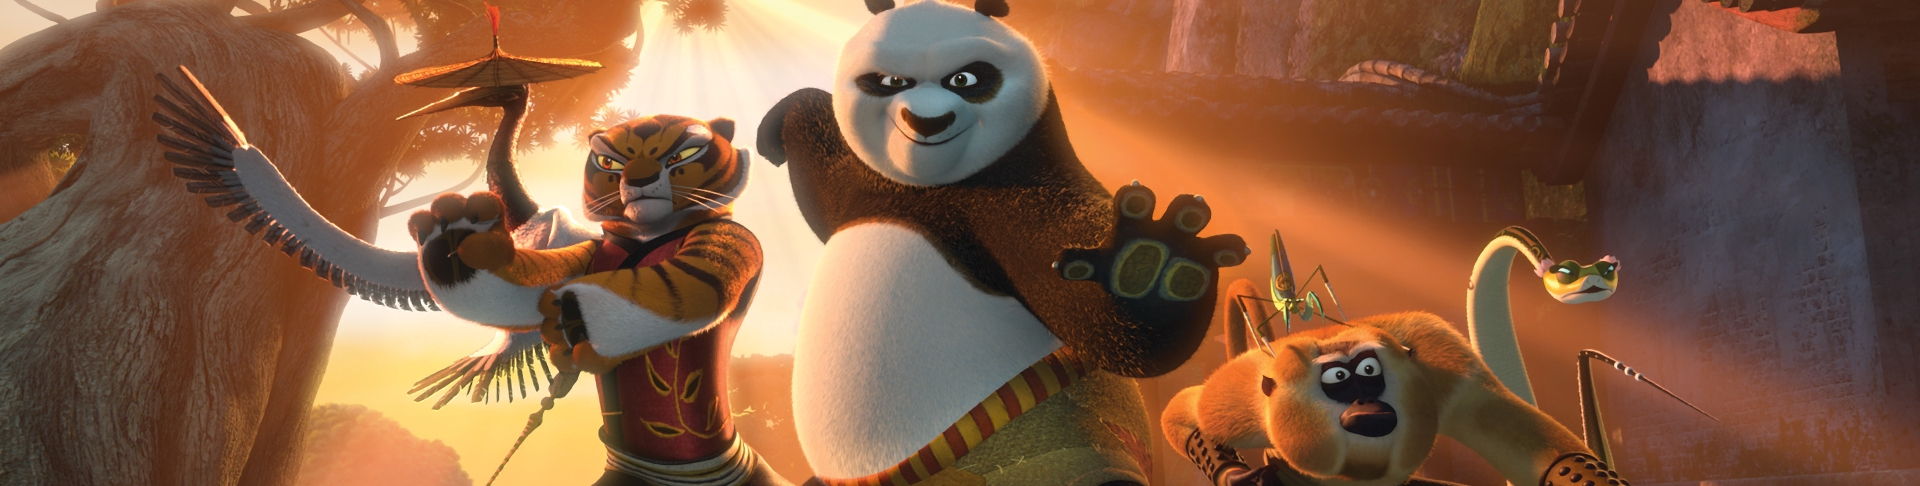 kung fu panda 2 full movie 3gp free download